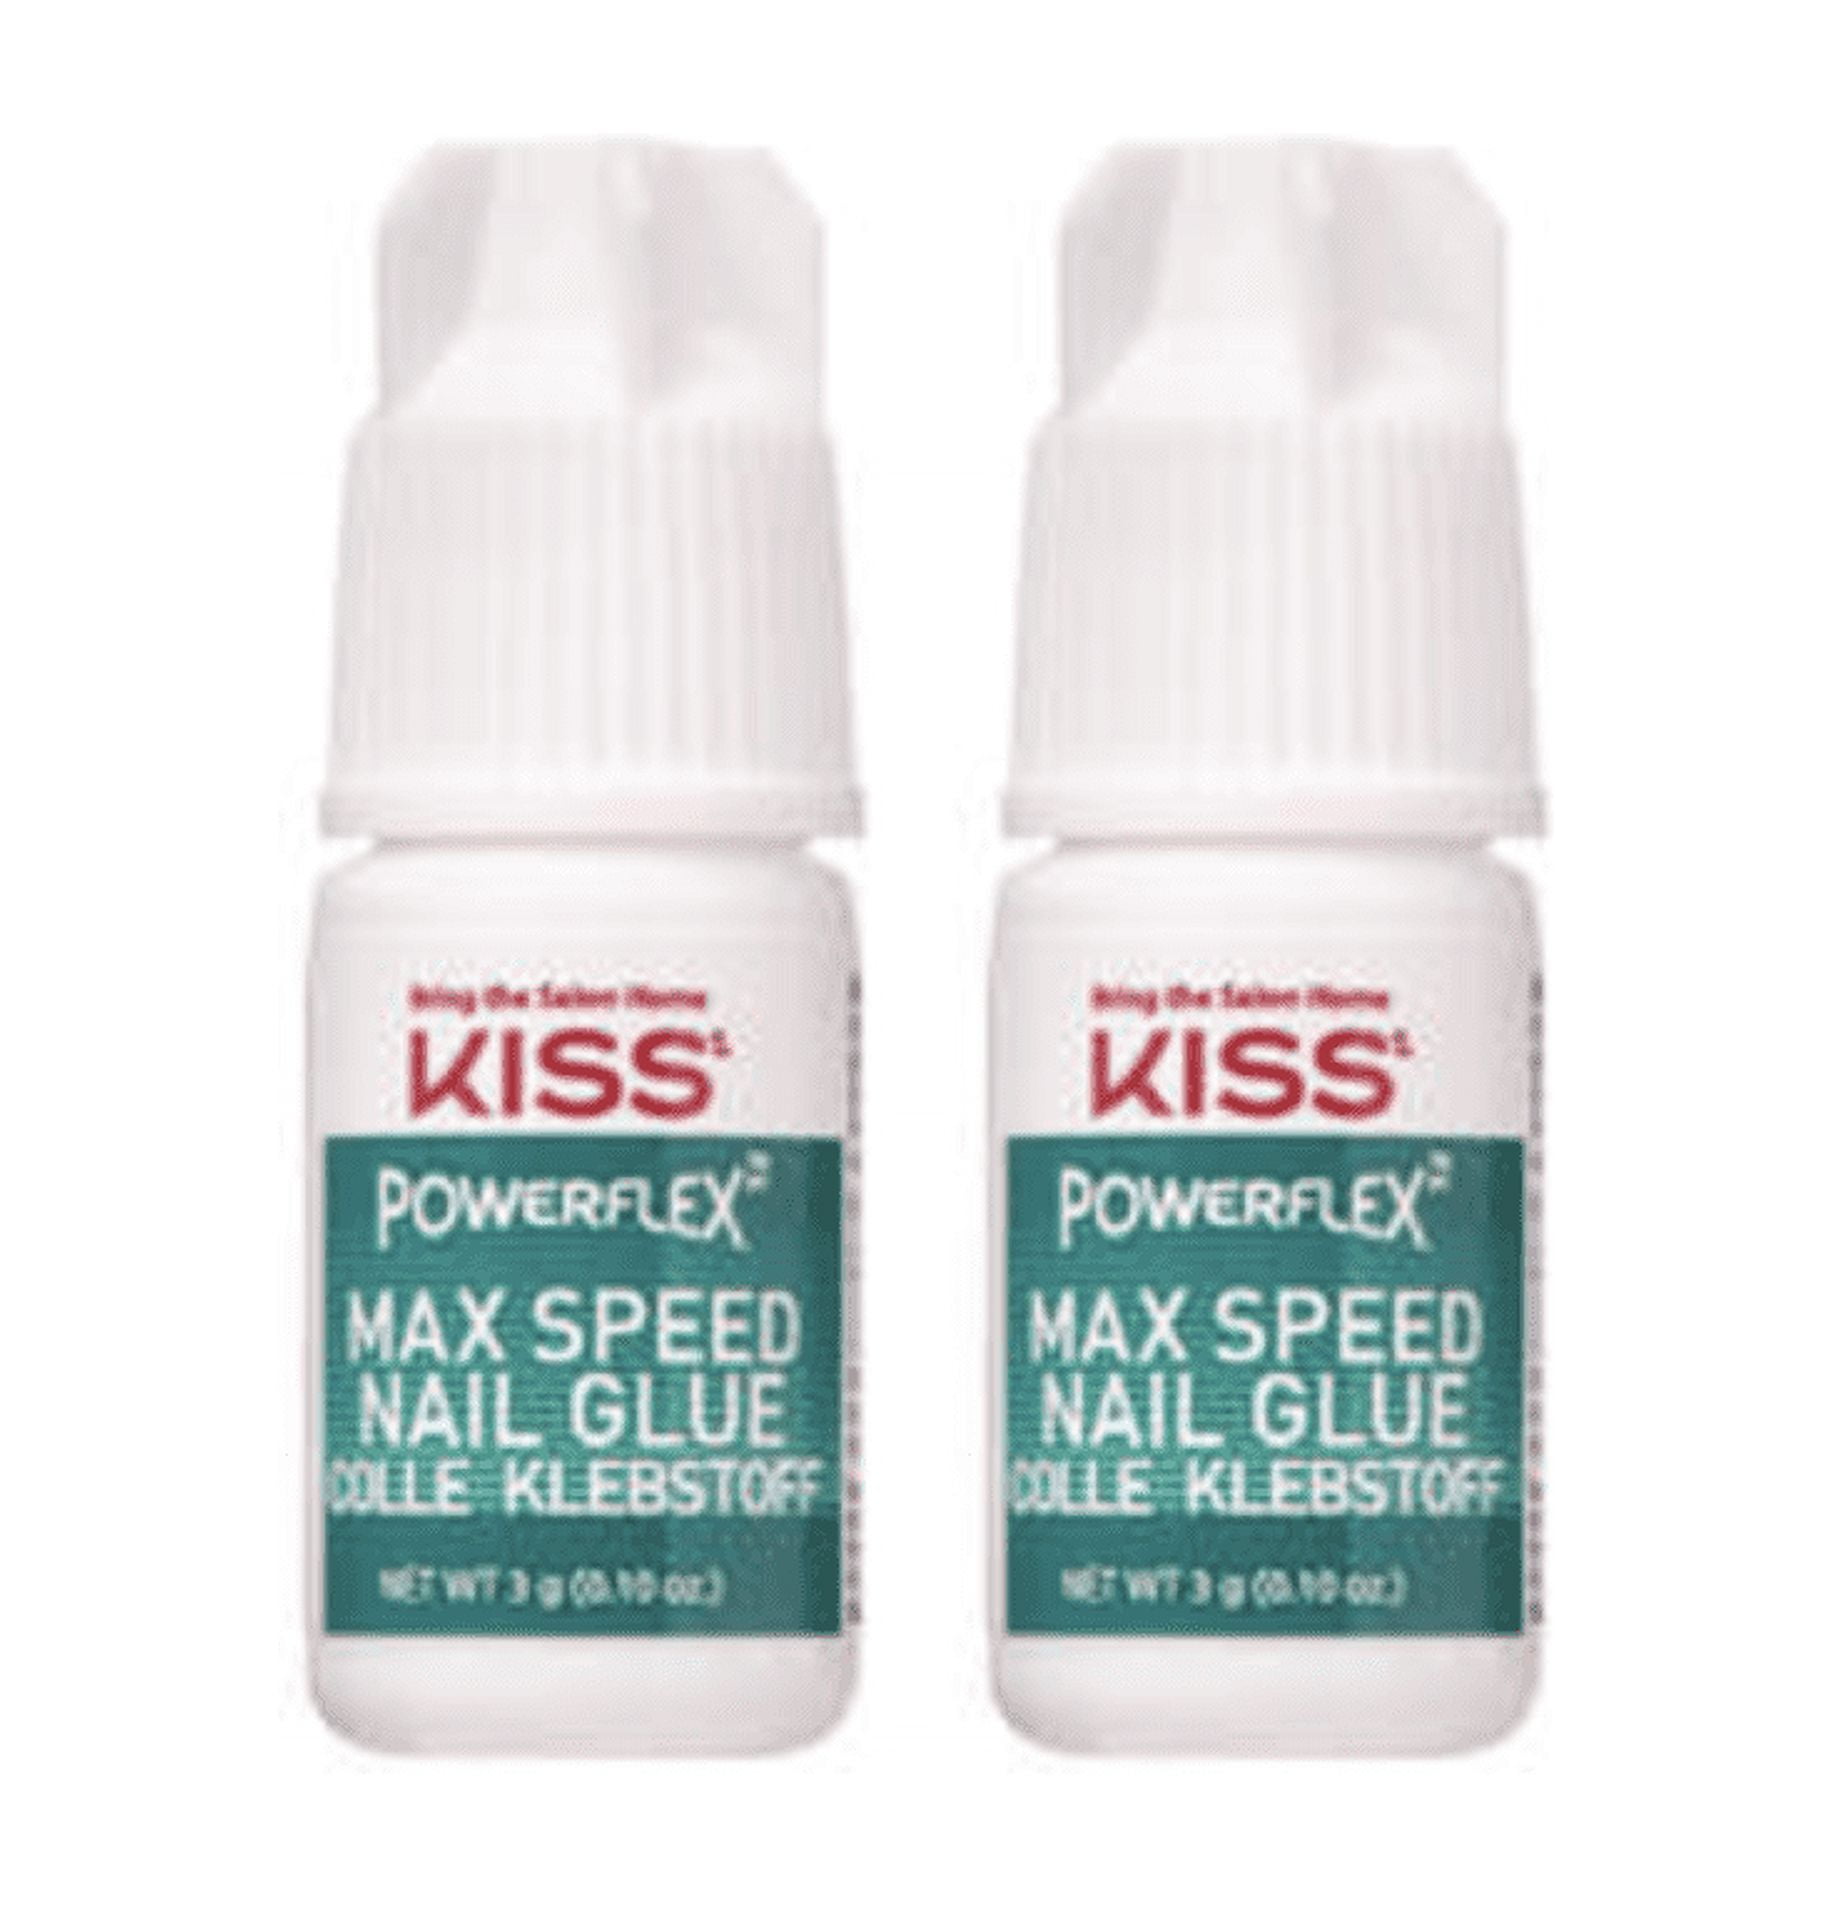 Kiss - Powerflex Max Speed Nail Glue - Save-On-Foods